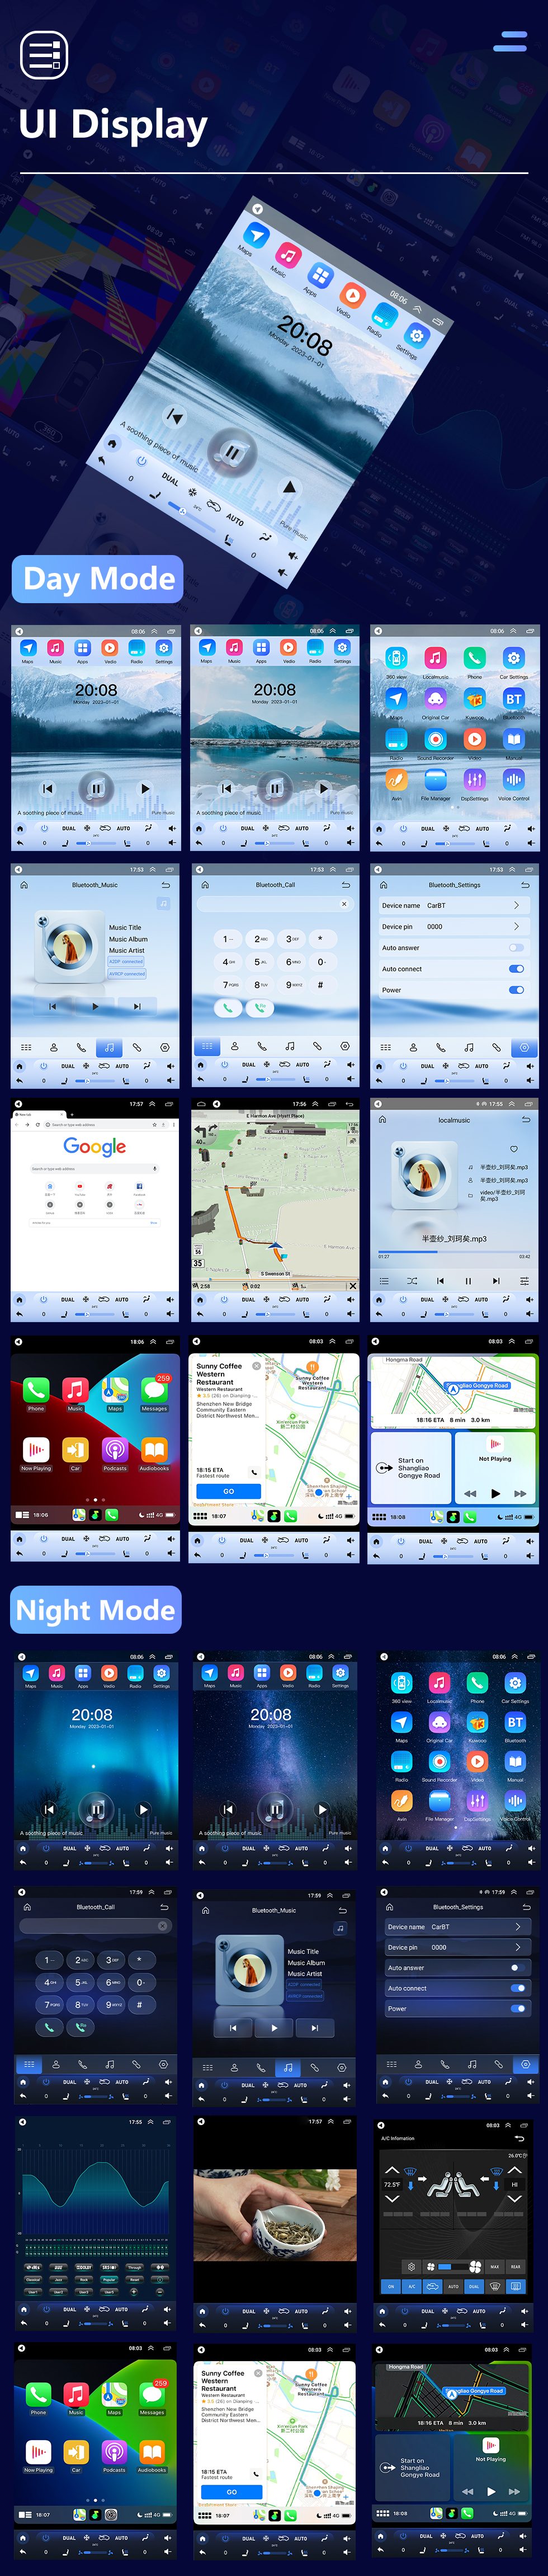 Seicane Para 2013 VOLKSWAGEN JETTA Rádio 9,7 polegadas Android 10.0 Navegação GPS com HD Touchscreen Suporte Bluetooth Carplay Câmera Traseira